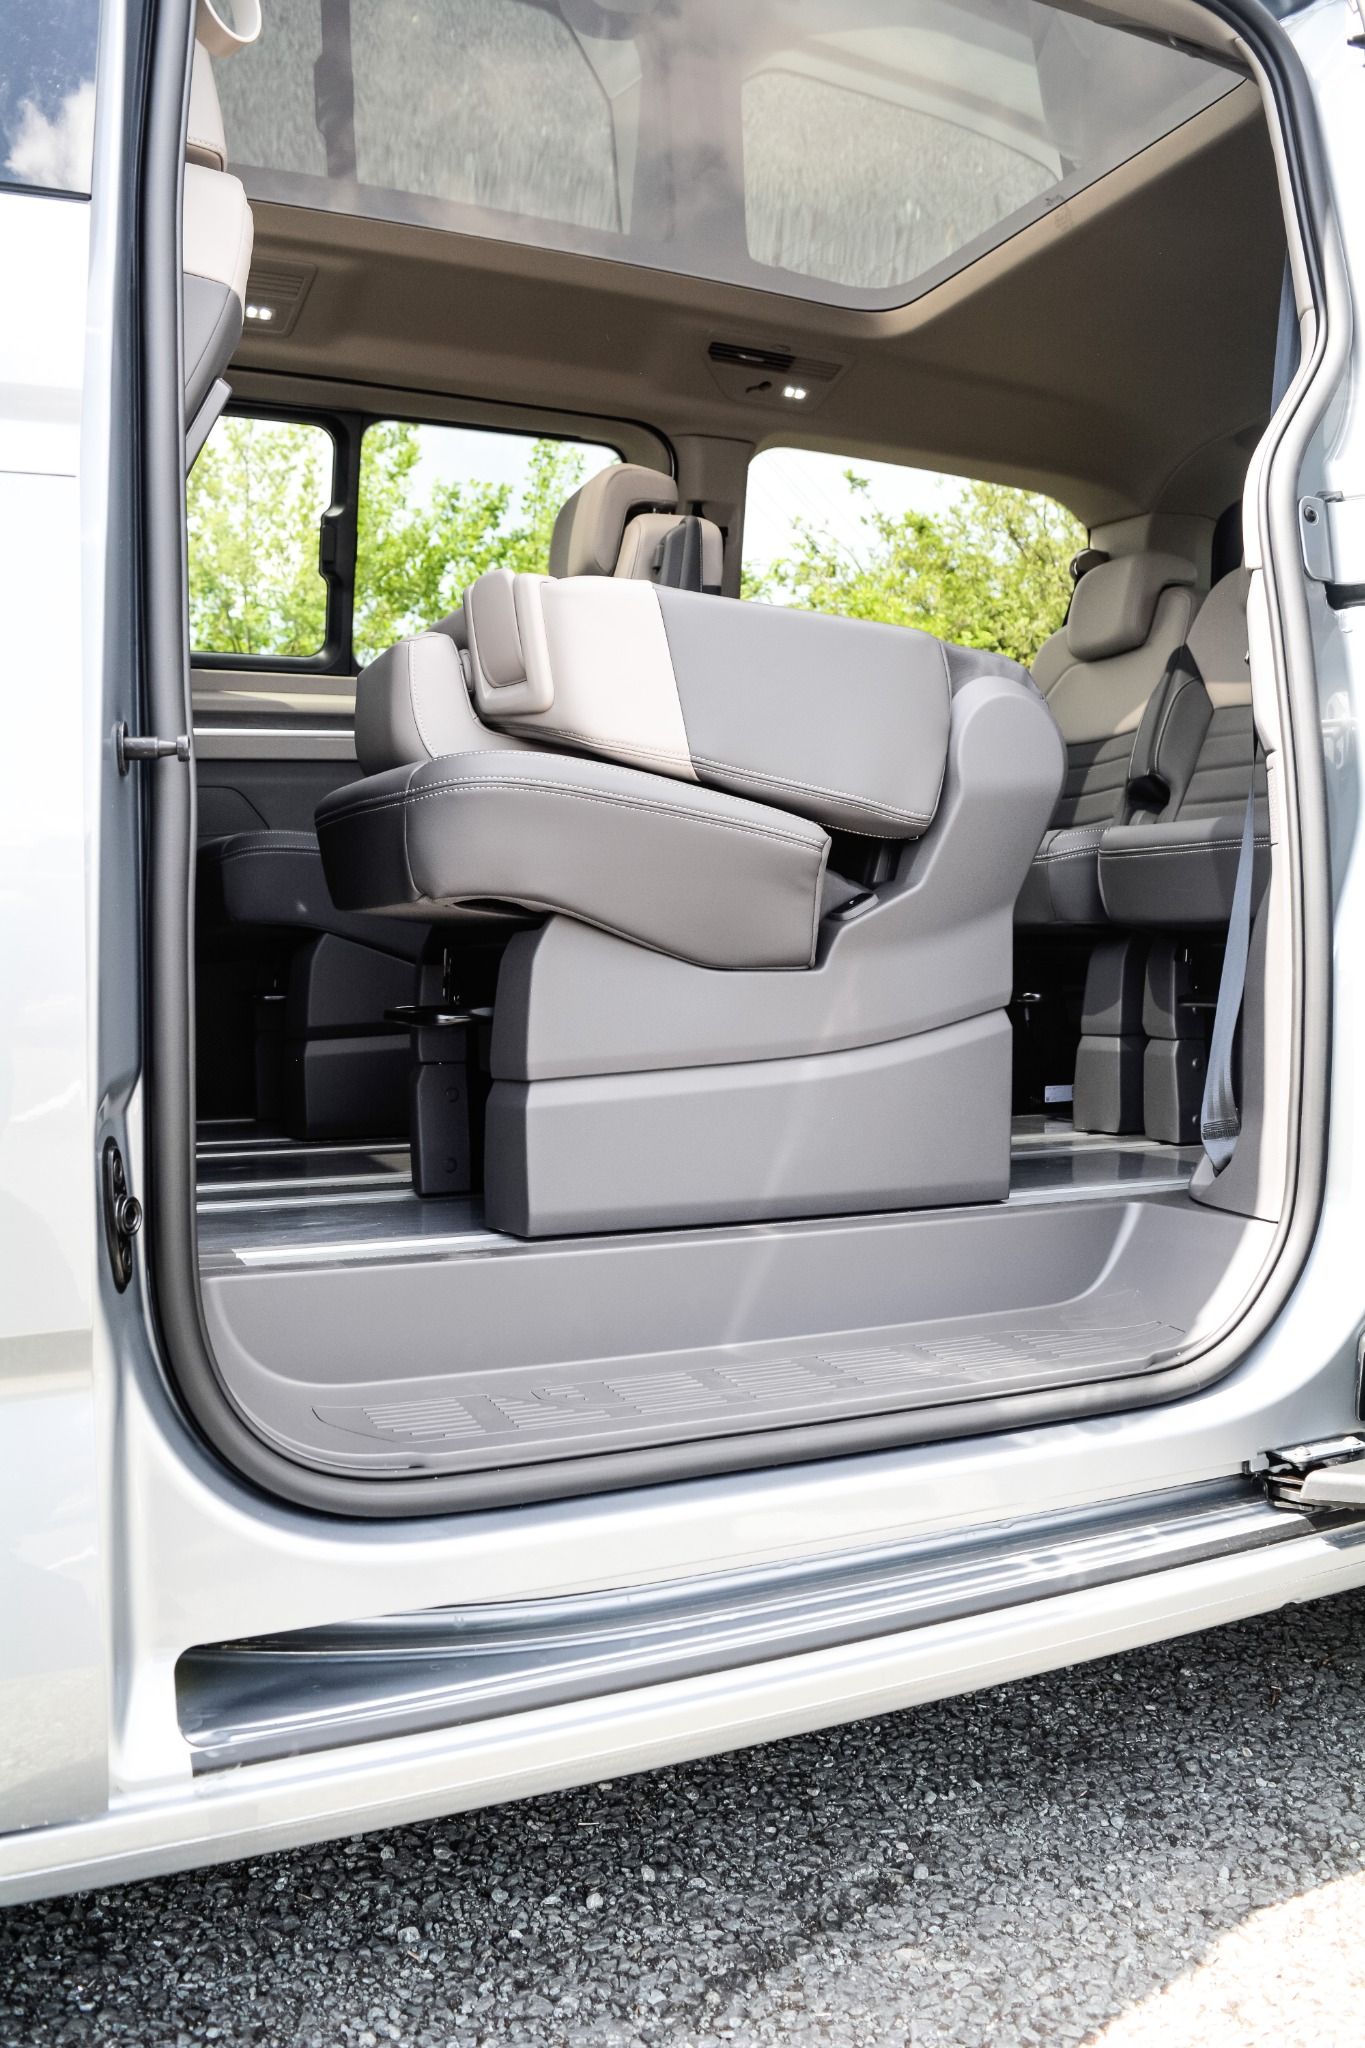 Folding rear seats in the Volkswagen multivan